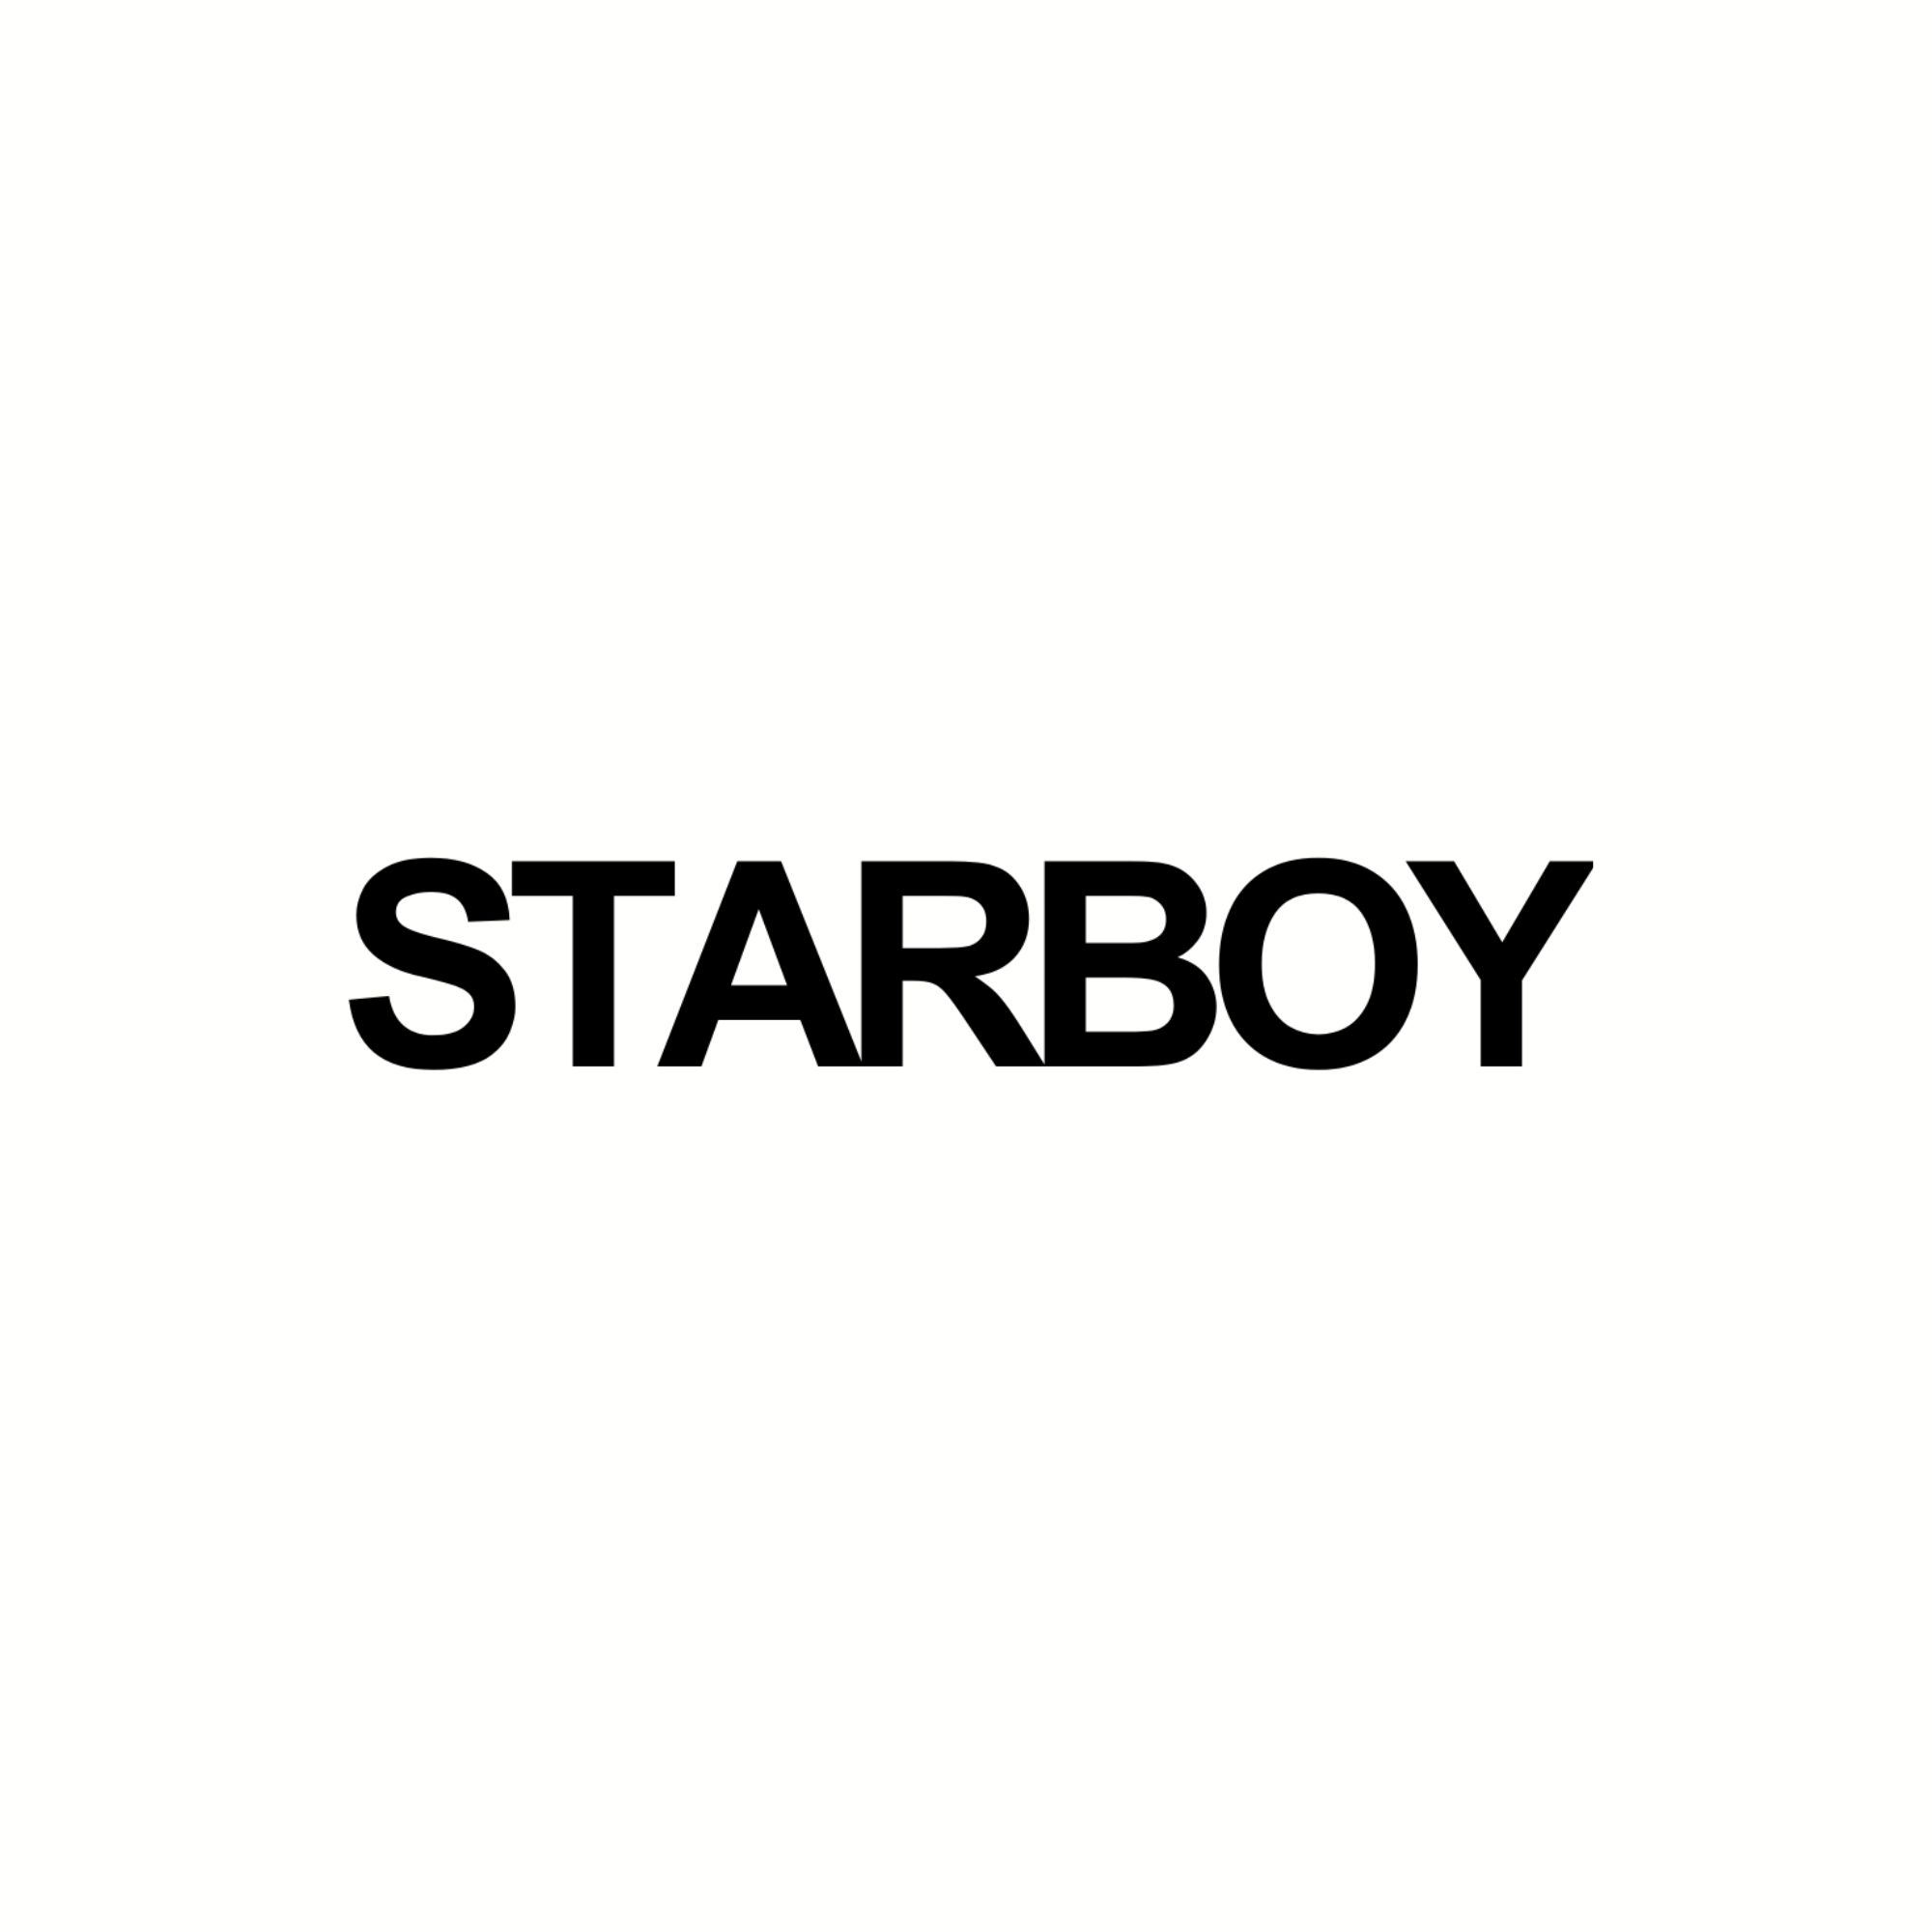 Starboy Cosmetics Lancia la sua Linea di Cosmetici per Uomo in Europa